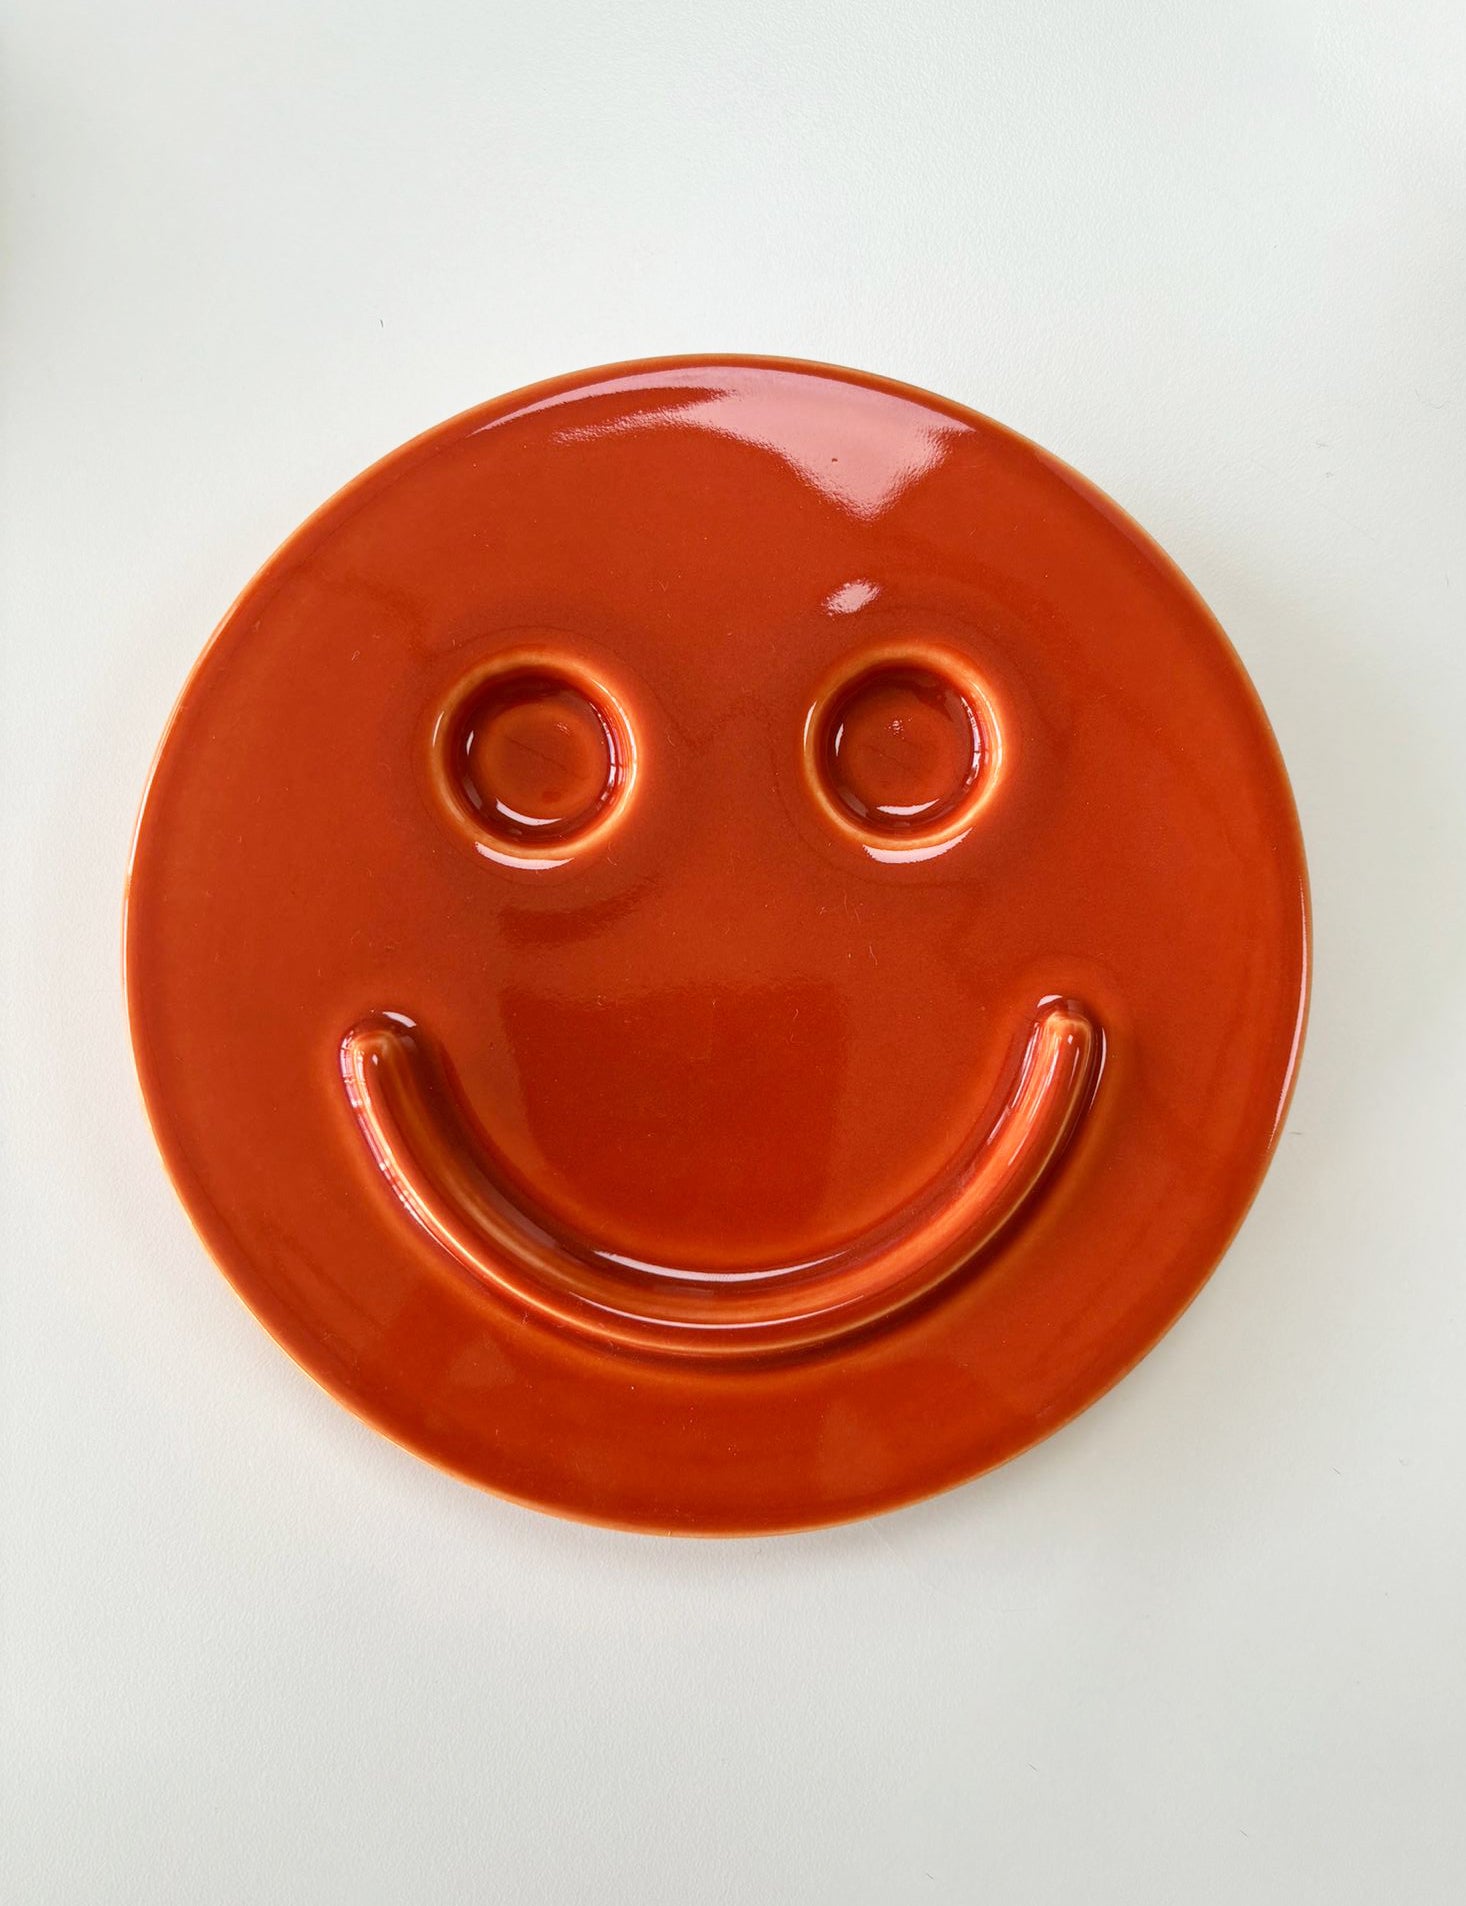 'HAPPY' ceramics